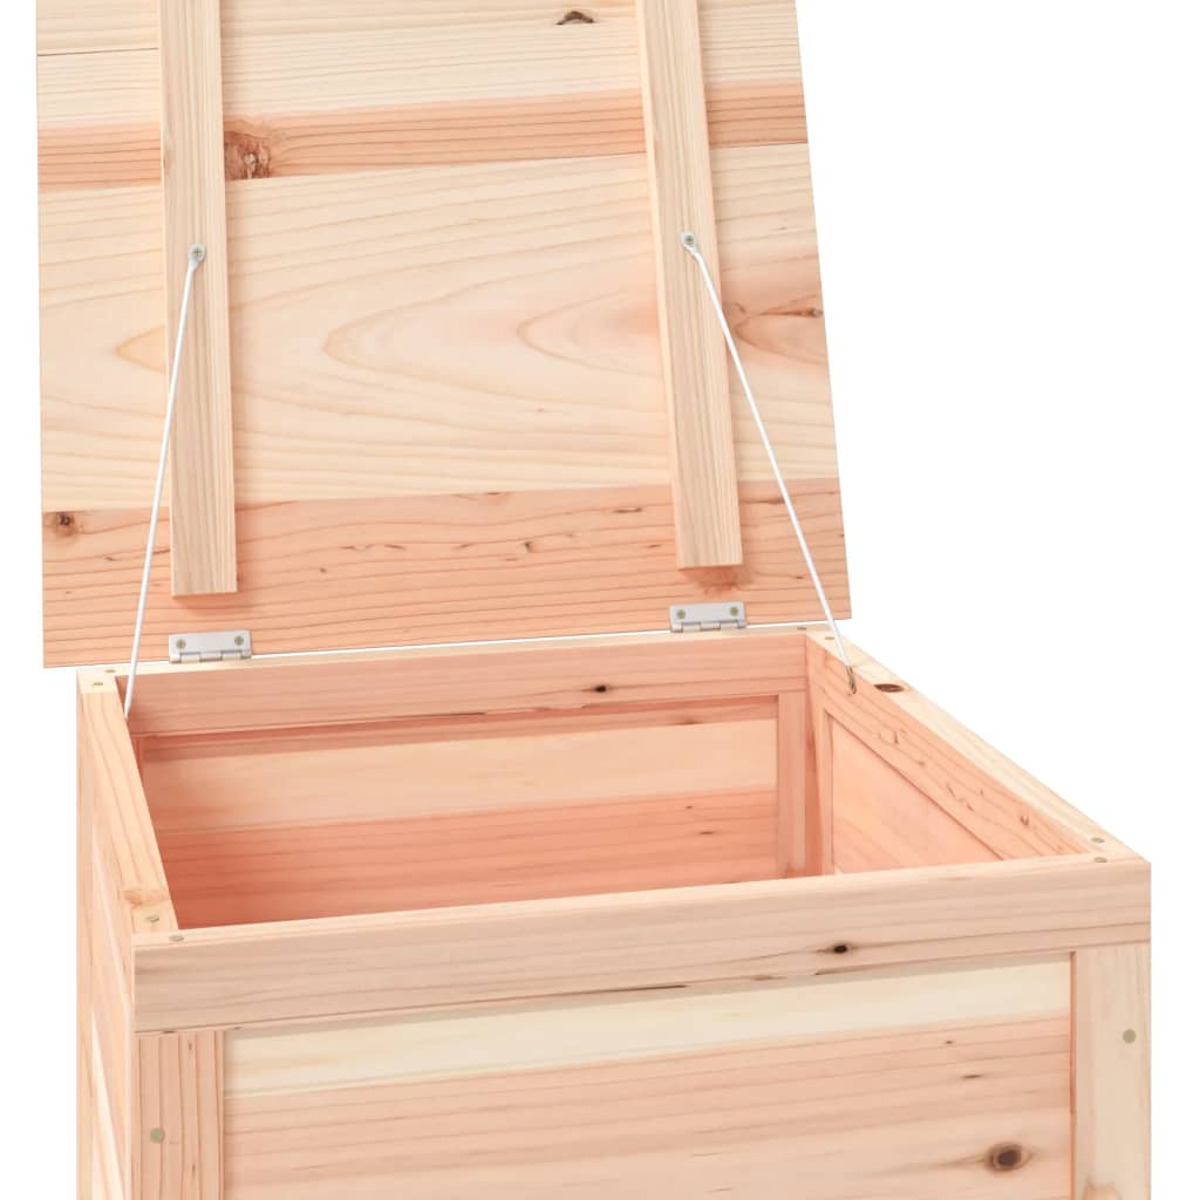 VIDAXL 152162 Aufbewahrungsbox für den Holzfarbe Garten